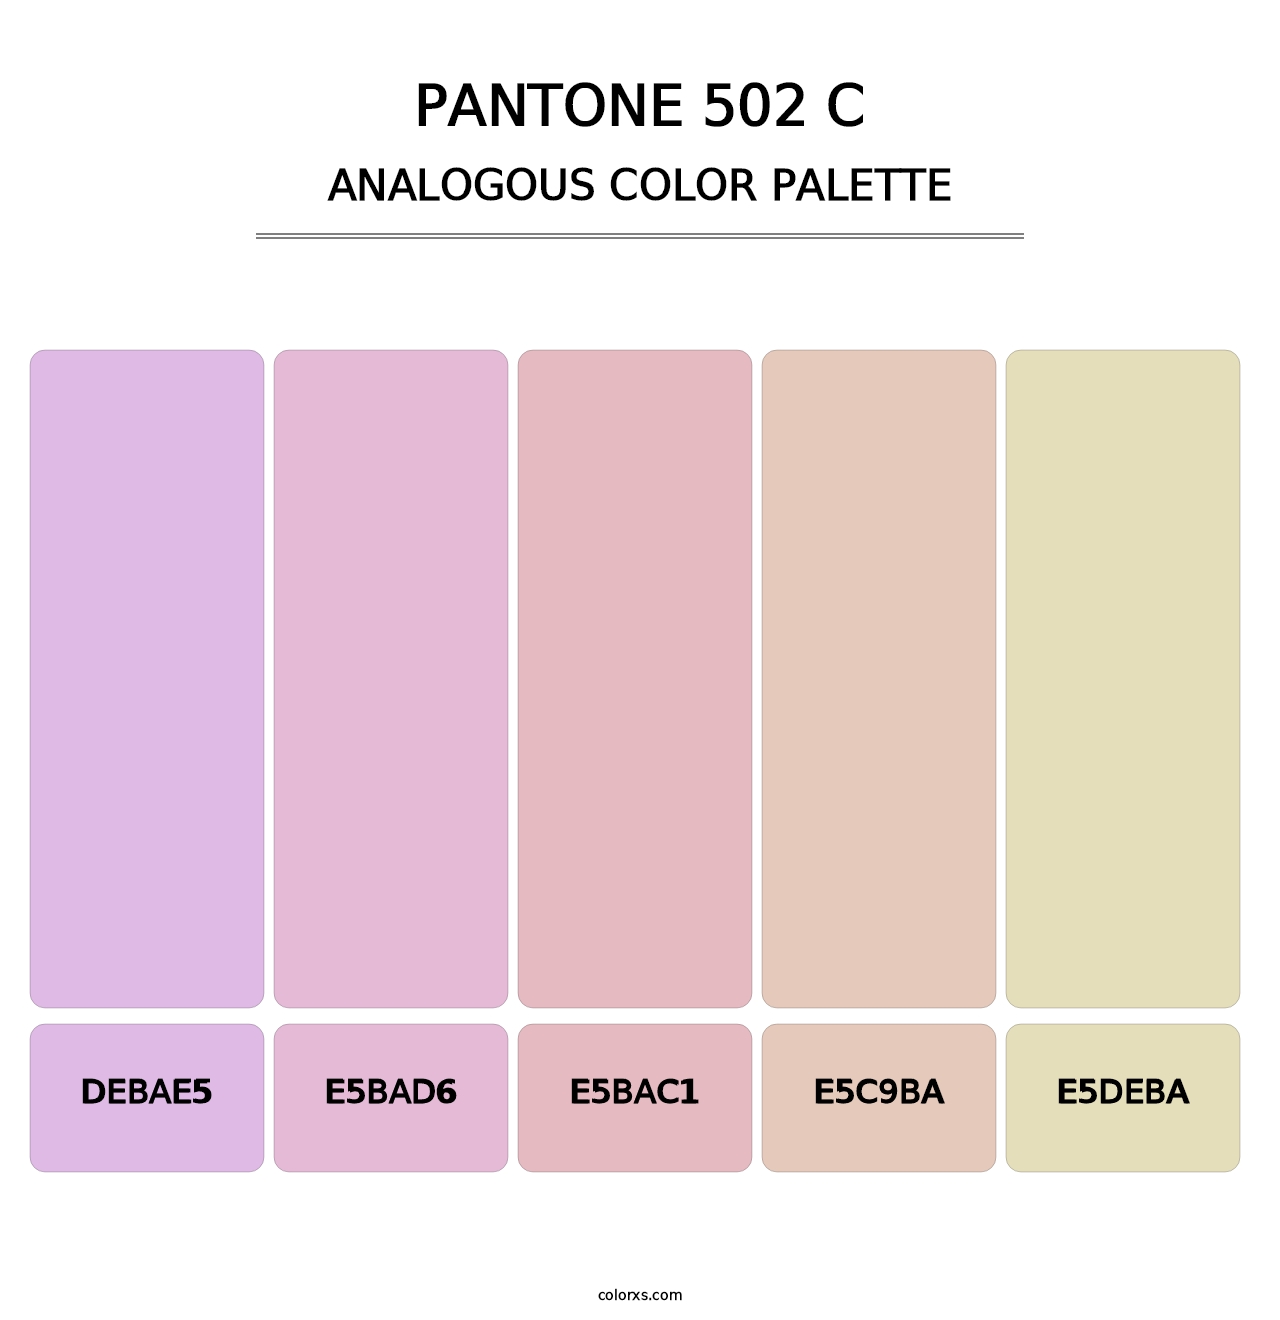 PANTONE 502 C - Analogous Color Palette